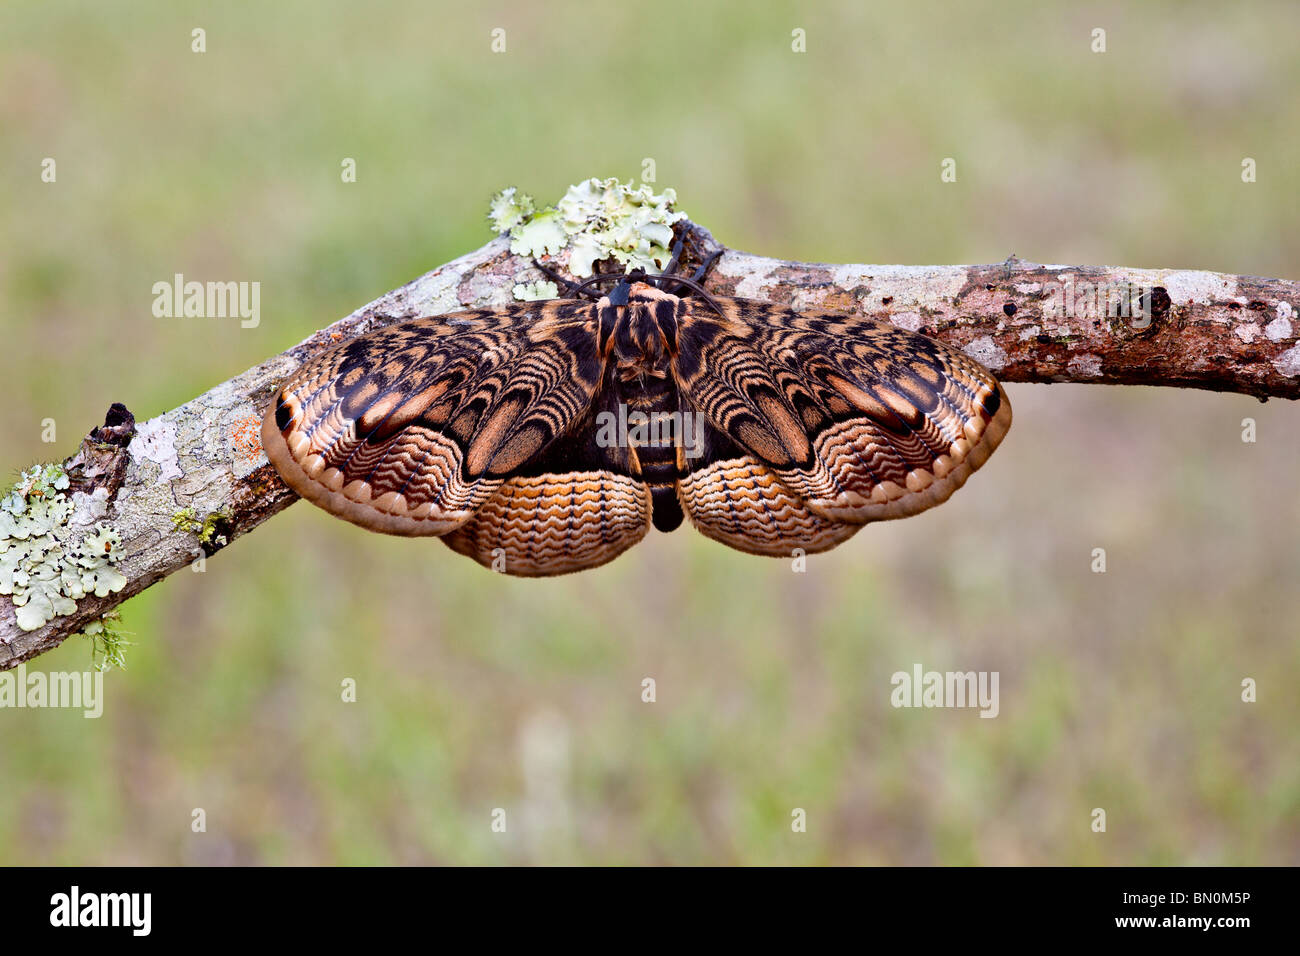 May 2009 - Sino-Korean Owl Moth (Brahmaea certhia) resting on a stick Stock Photo